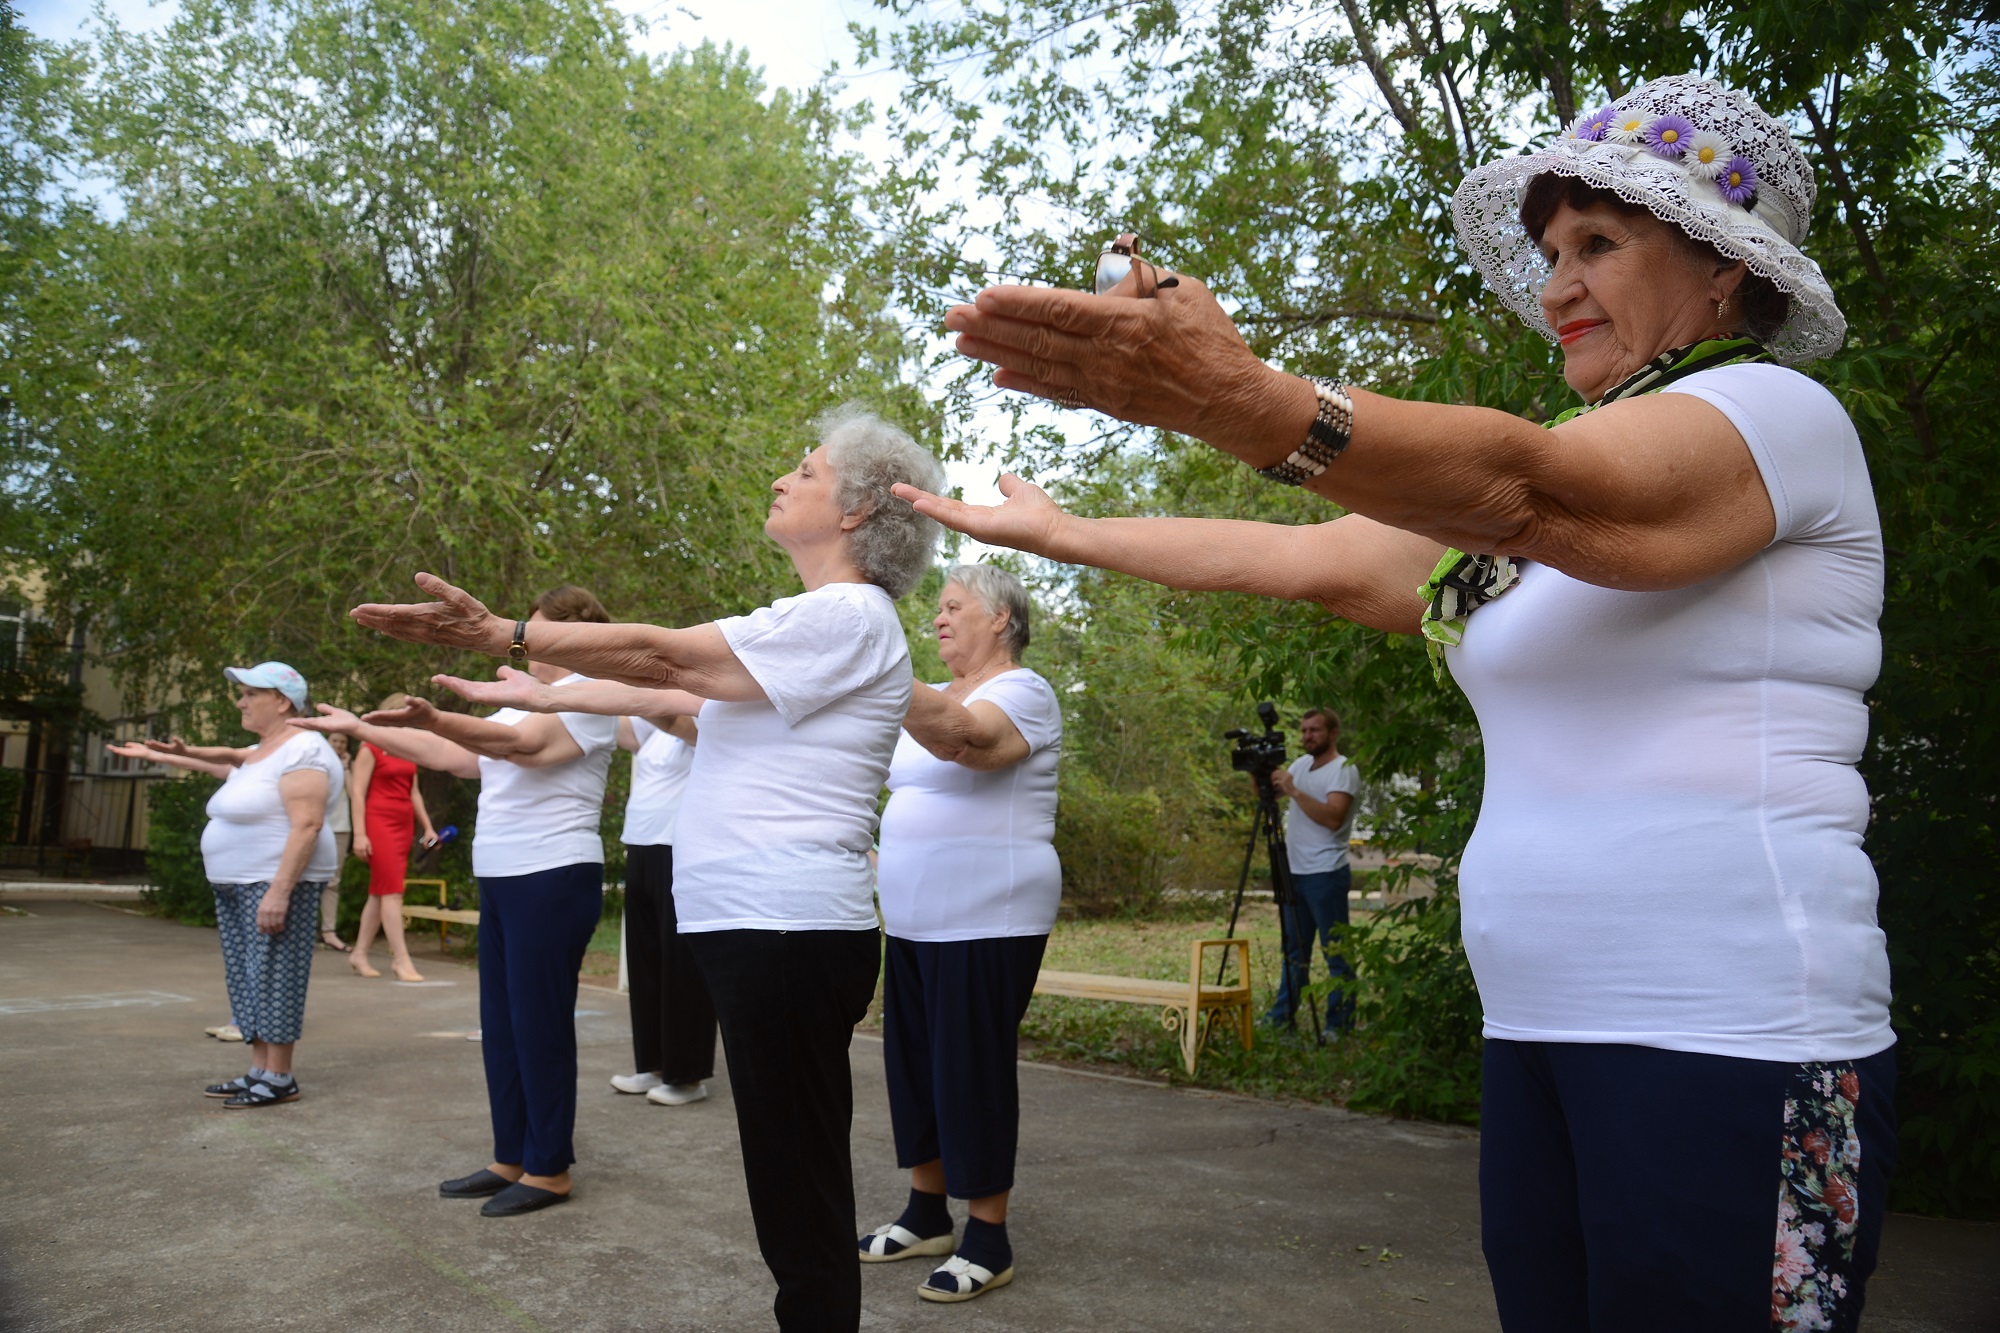 Сайт клуба пенсионеров. День здоровья для пожилых. Пенсионеры танцуют. Танцы для пенсионеров. Праздник пенсионеров.